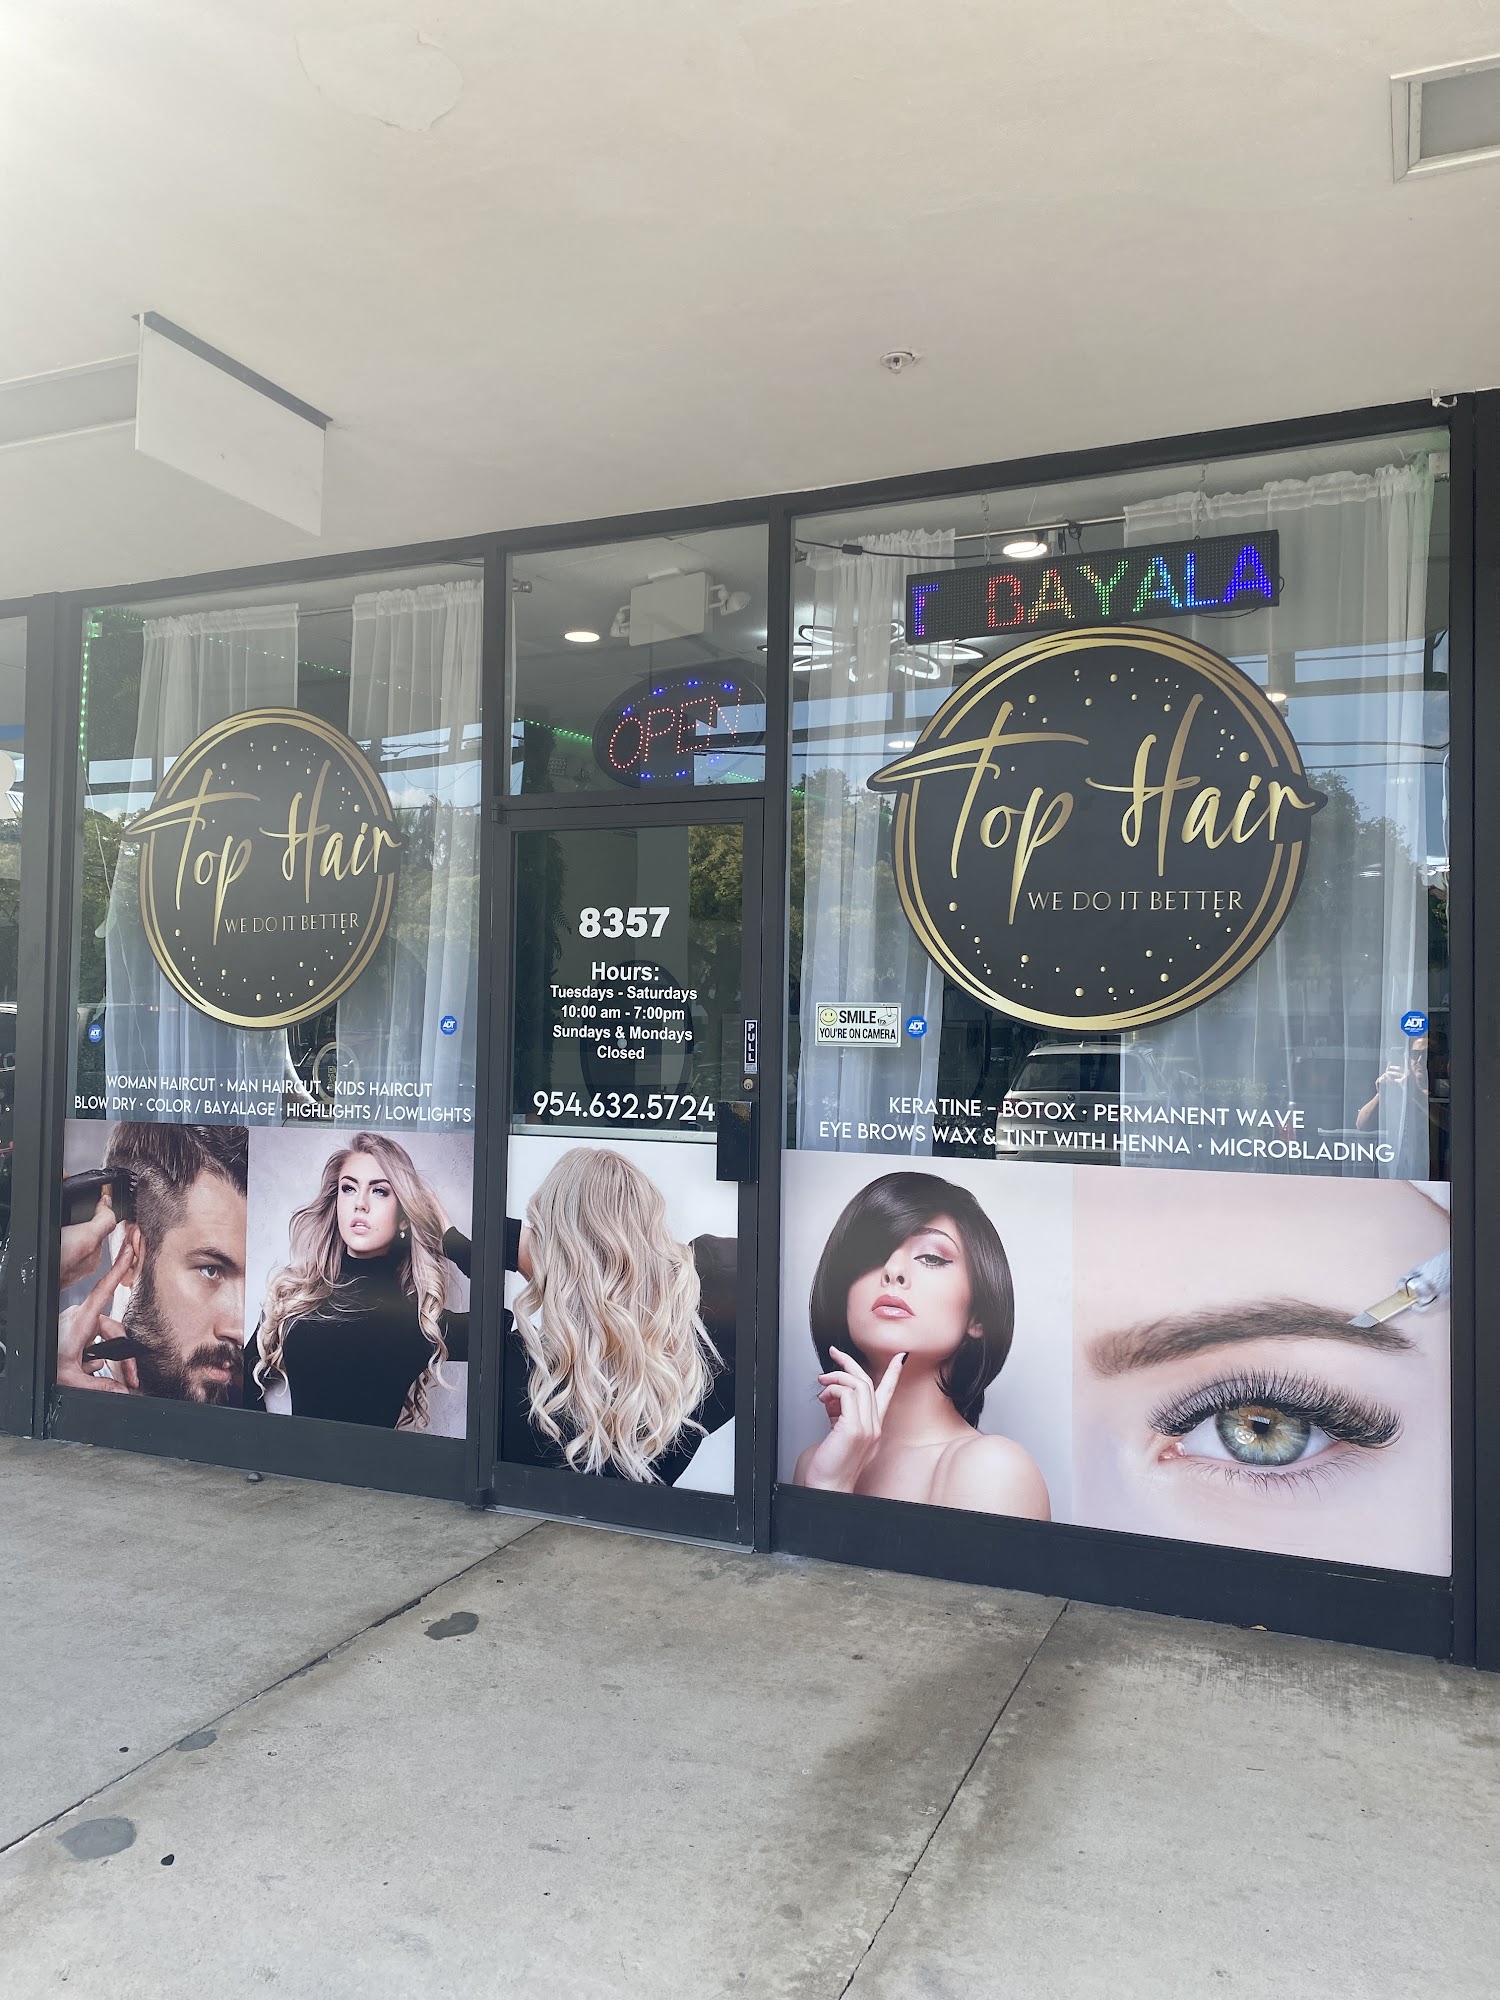 Top Hair - Beauty Salon